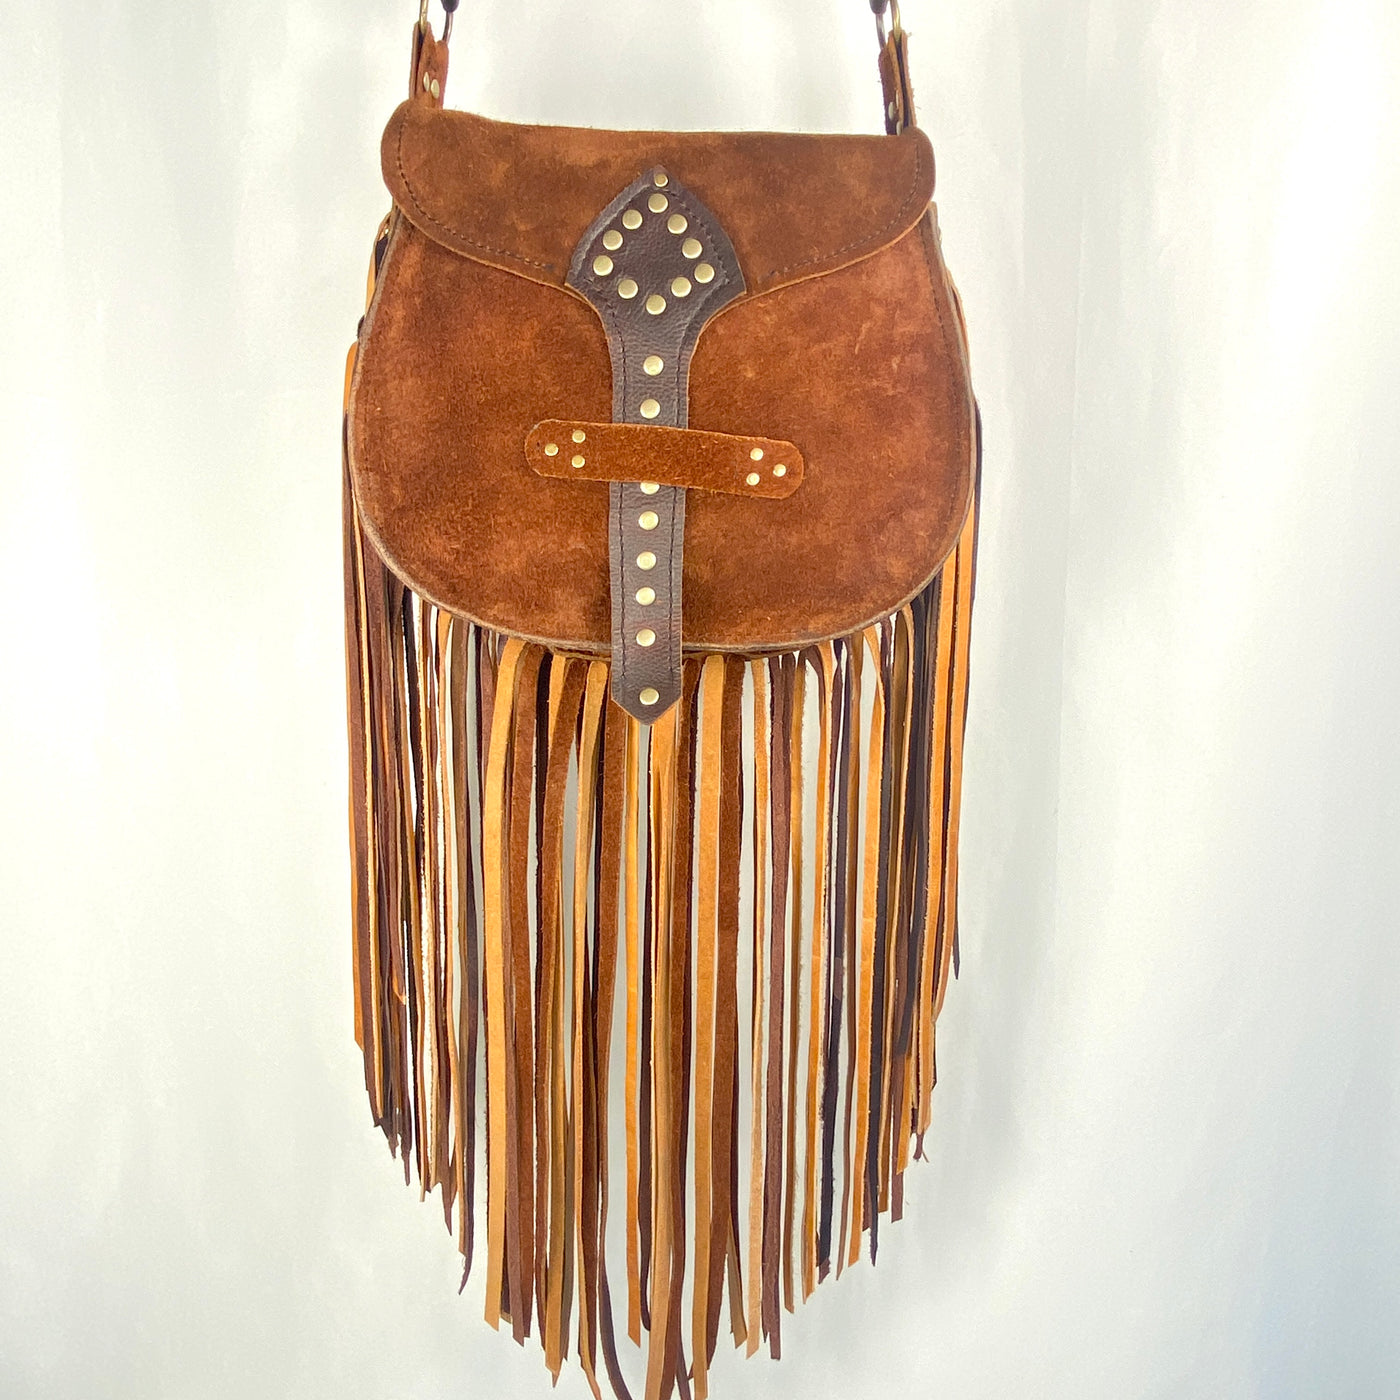 Buy Fringe Leather Crossbody Bag, Taupe Color Suede Purse, Hippie Fringed  Bag, Boho Shoulder Bag Online in India - Etsy